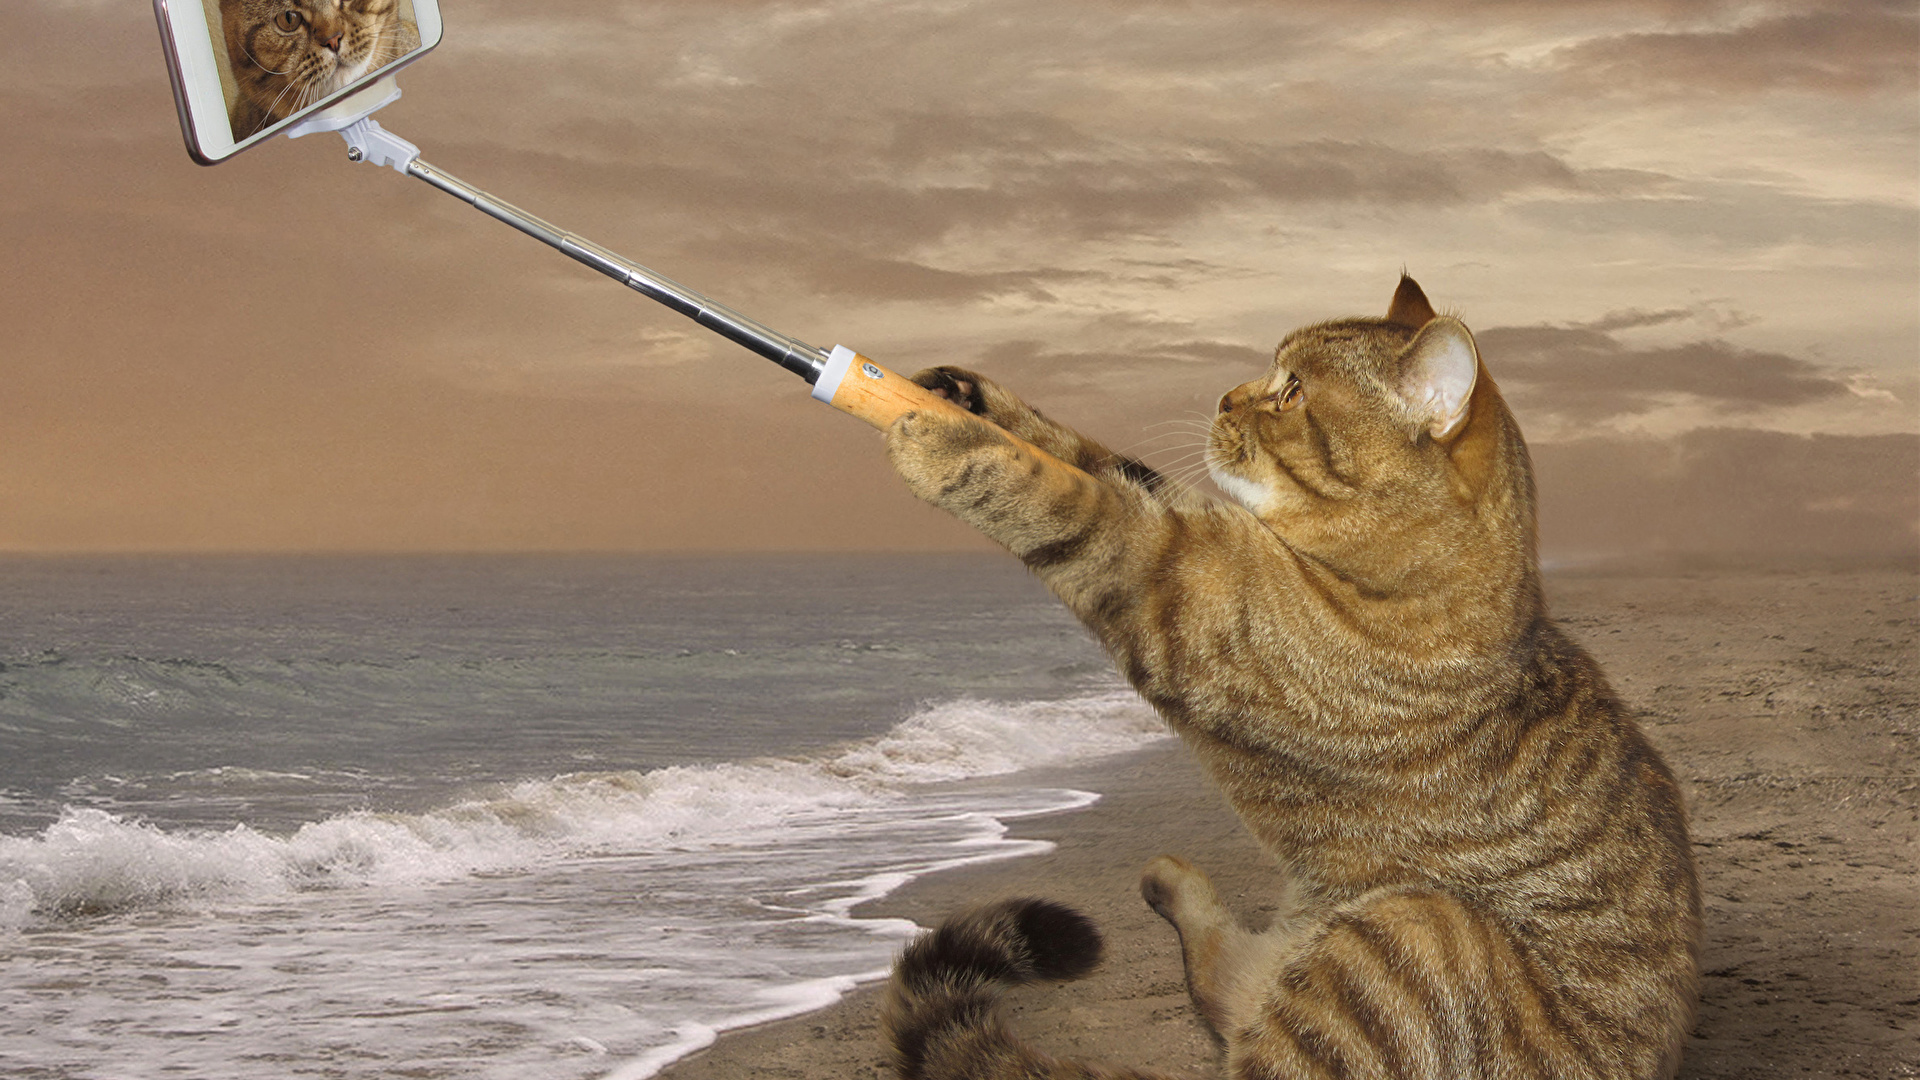 壁紙 19x1080 クリエイティブ 飼い猫 海岸 おもしろい スマートフォン 座っ 自分撮り 動物 ダウンロード 写真